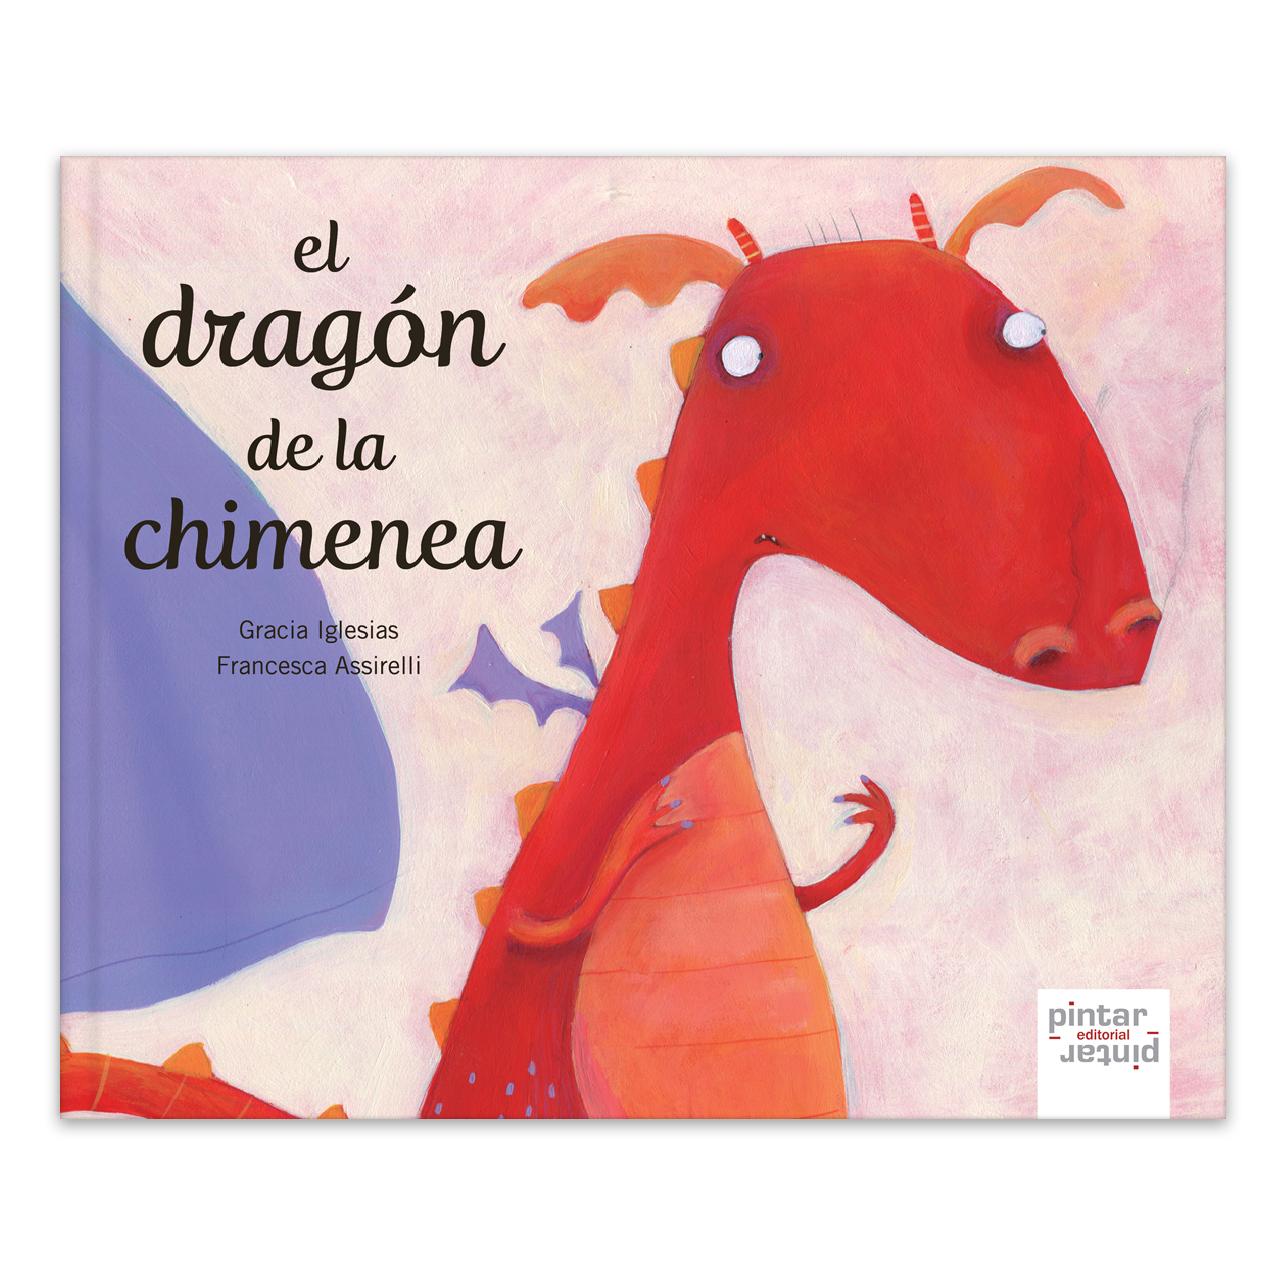 Portada del libro en el que aparece la ilustración de un dragón color naranja en grande